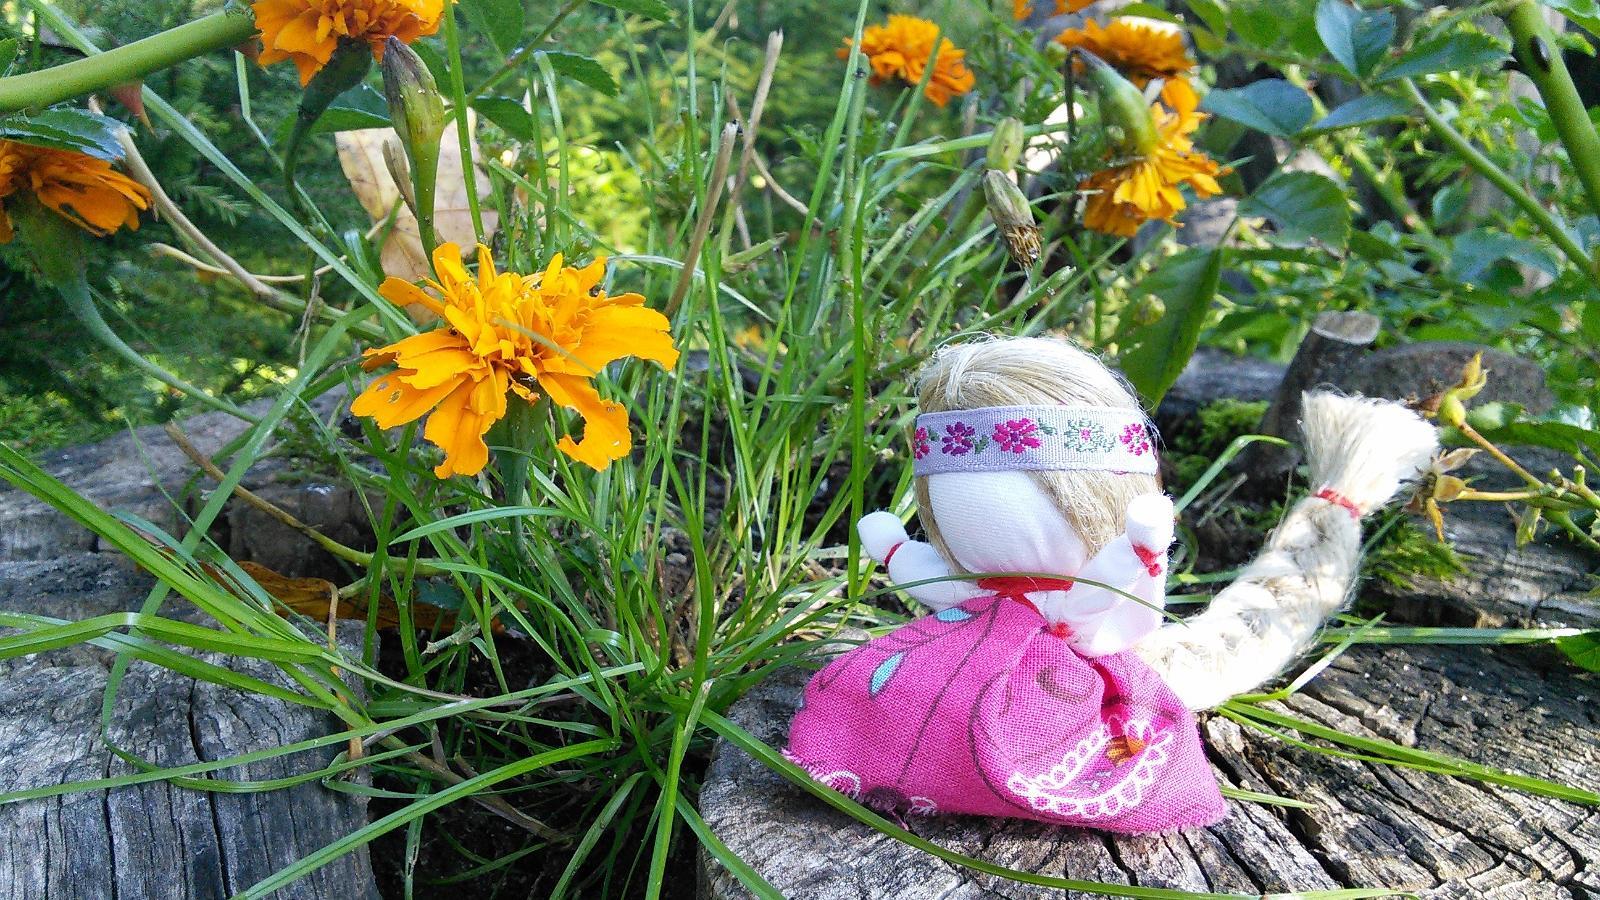 Мастер-класс по изготовлению традиционной русской куклы-талисмана «Куколка на счастье» на Русском хуторе